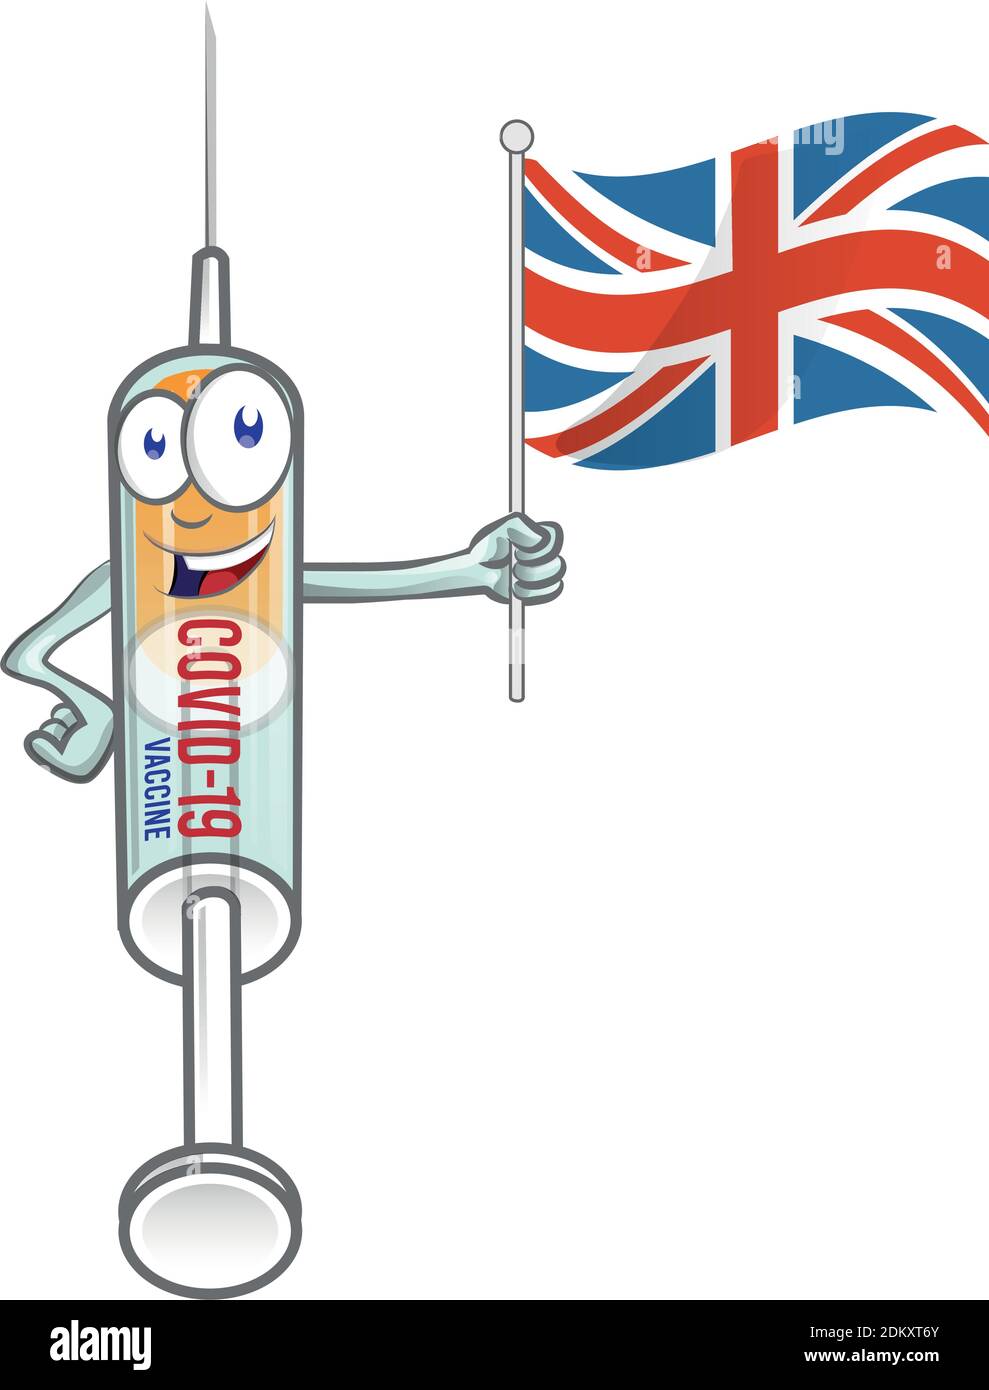 siringa medica vaccino corona virus covid-19 con uk flag. vettore cartoon illustrazione Illustrazione Vettoriale